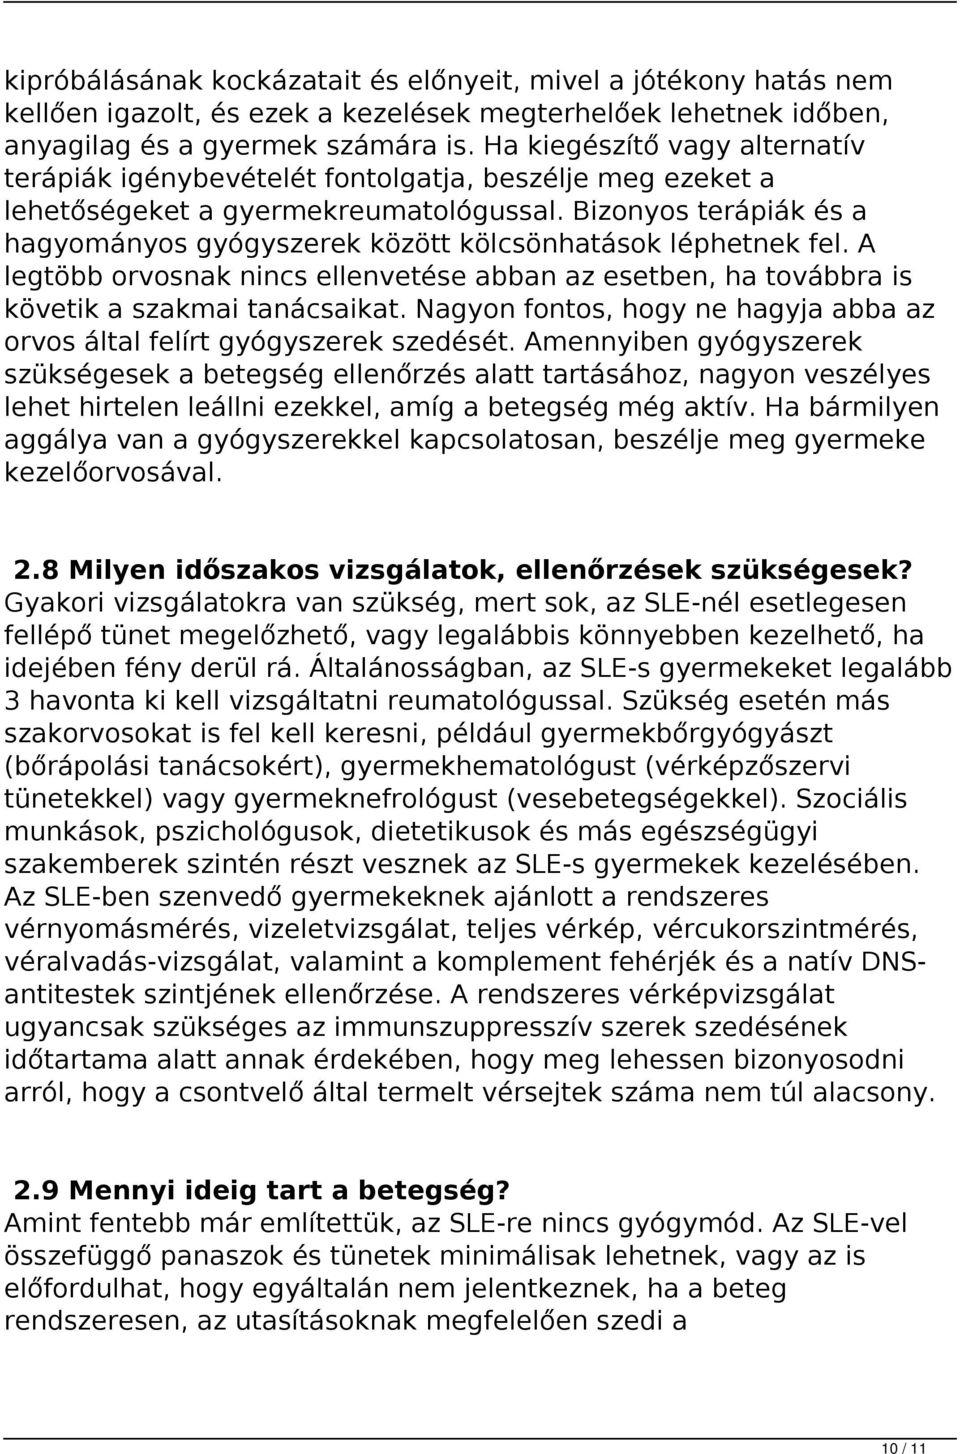 Szisztémás Lupusz Eritematózusz (SLE) - PDF Ingyenes letöltés